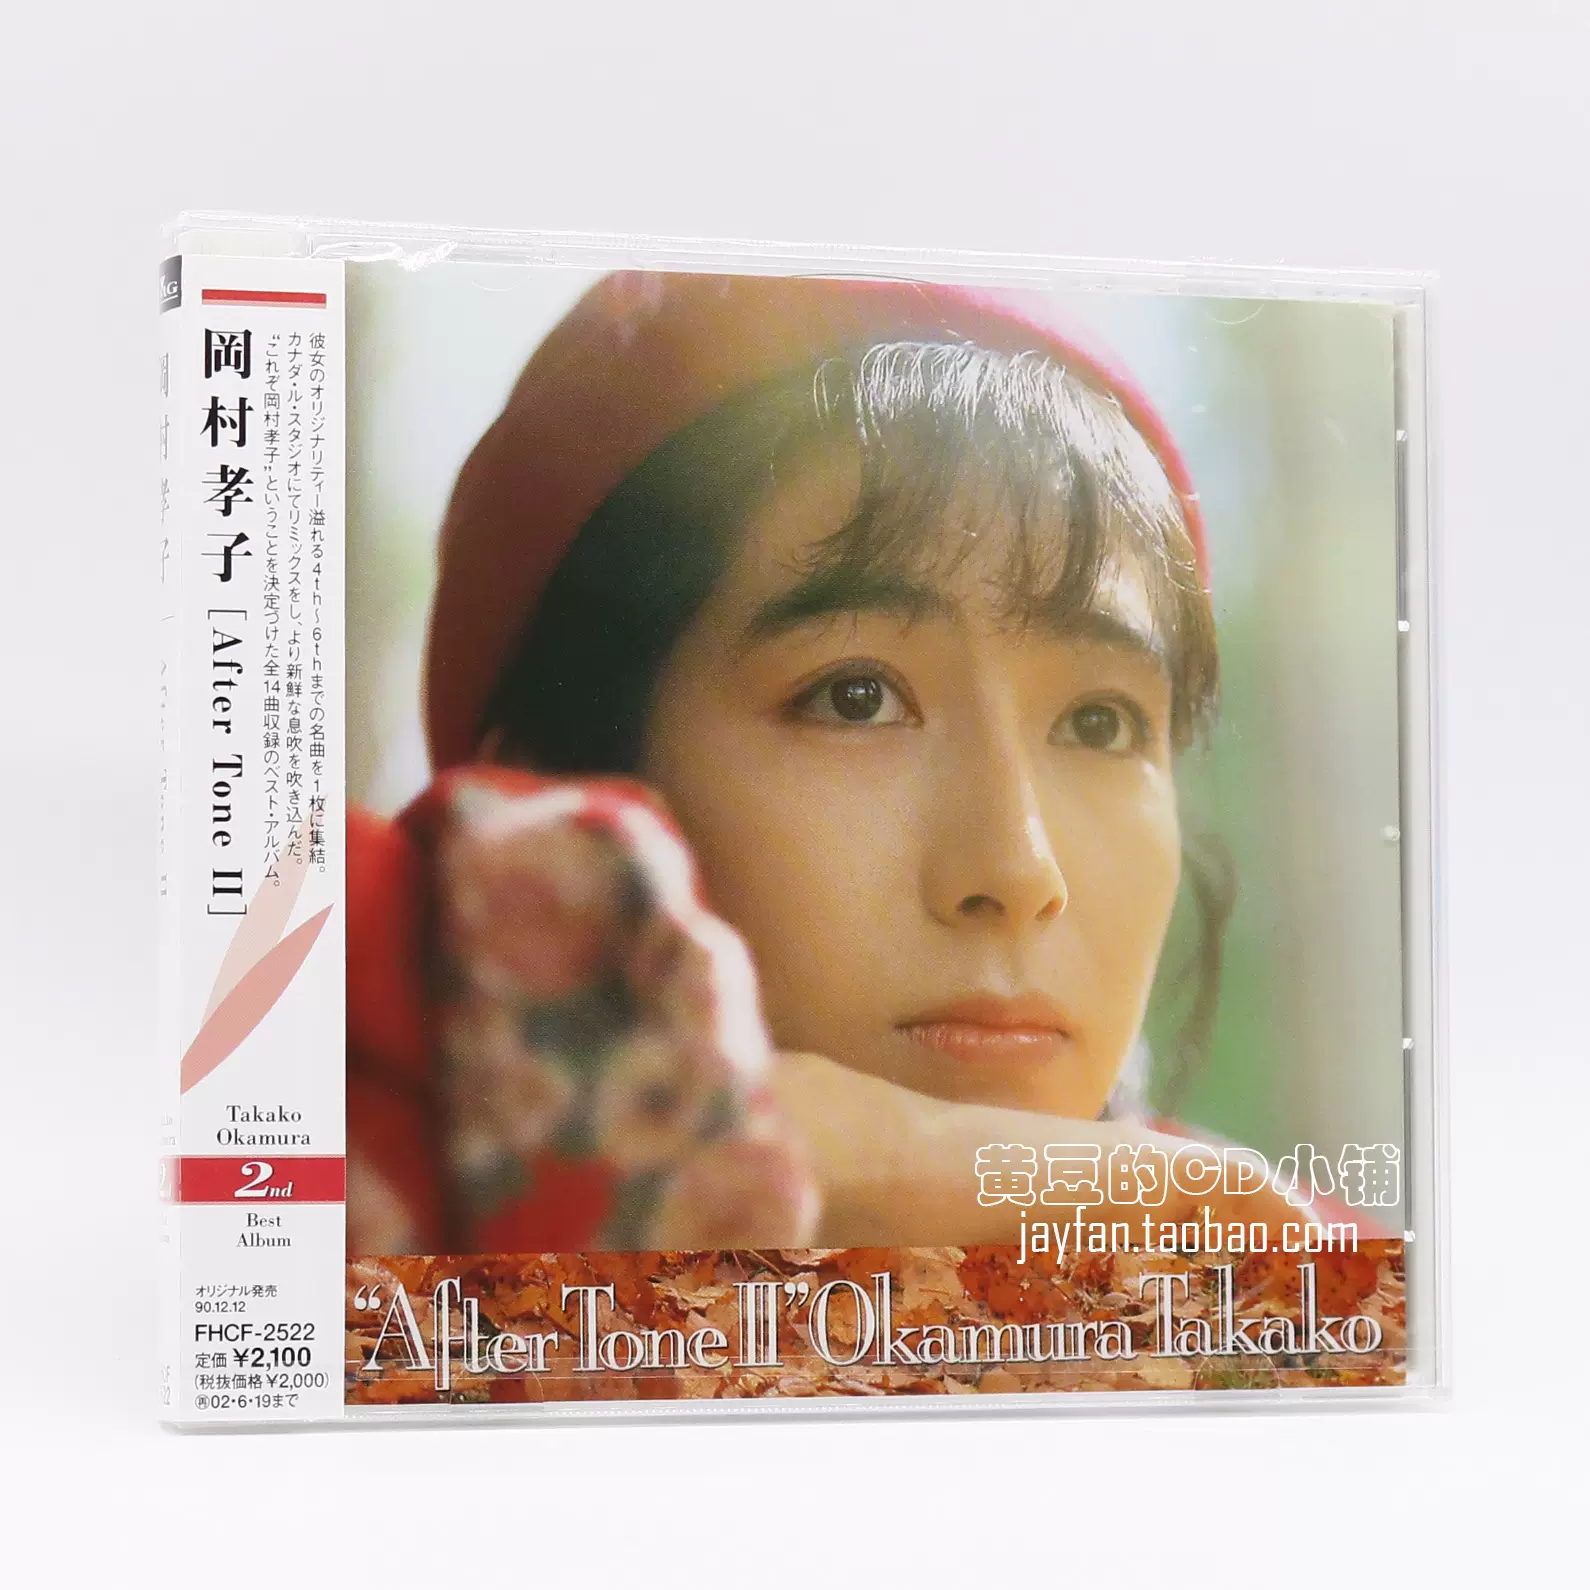 冈村孝子岡村孝子After Tone II CD 全款计销量-Taobao